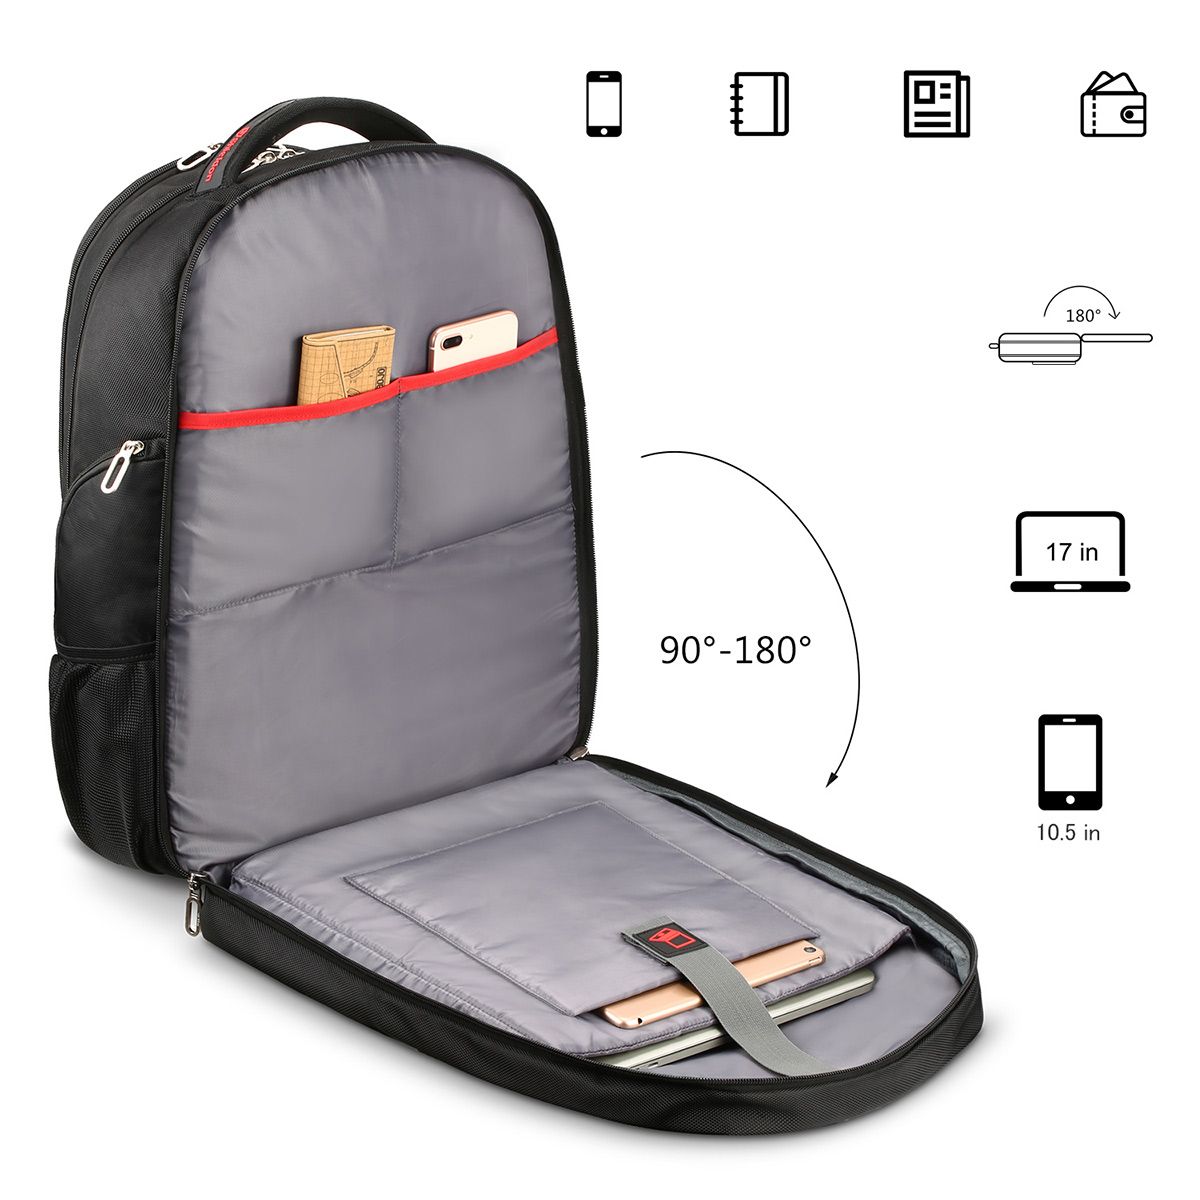 Рюкзак для ноутбука 16 дюймов. Бизнес-рюкзак Tellur 17,3" Notebook Backpack Business l, USB Port, Black. Противоударный рюкзак для ноутбука 17.3. Кожаный рюкзак для ноутбука 17.3 дюймов.